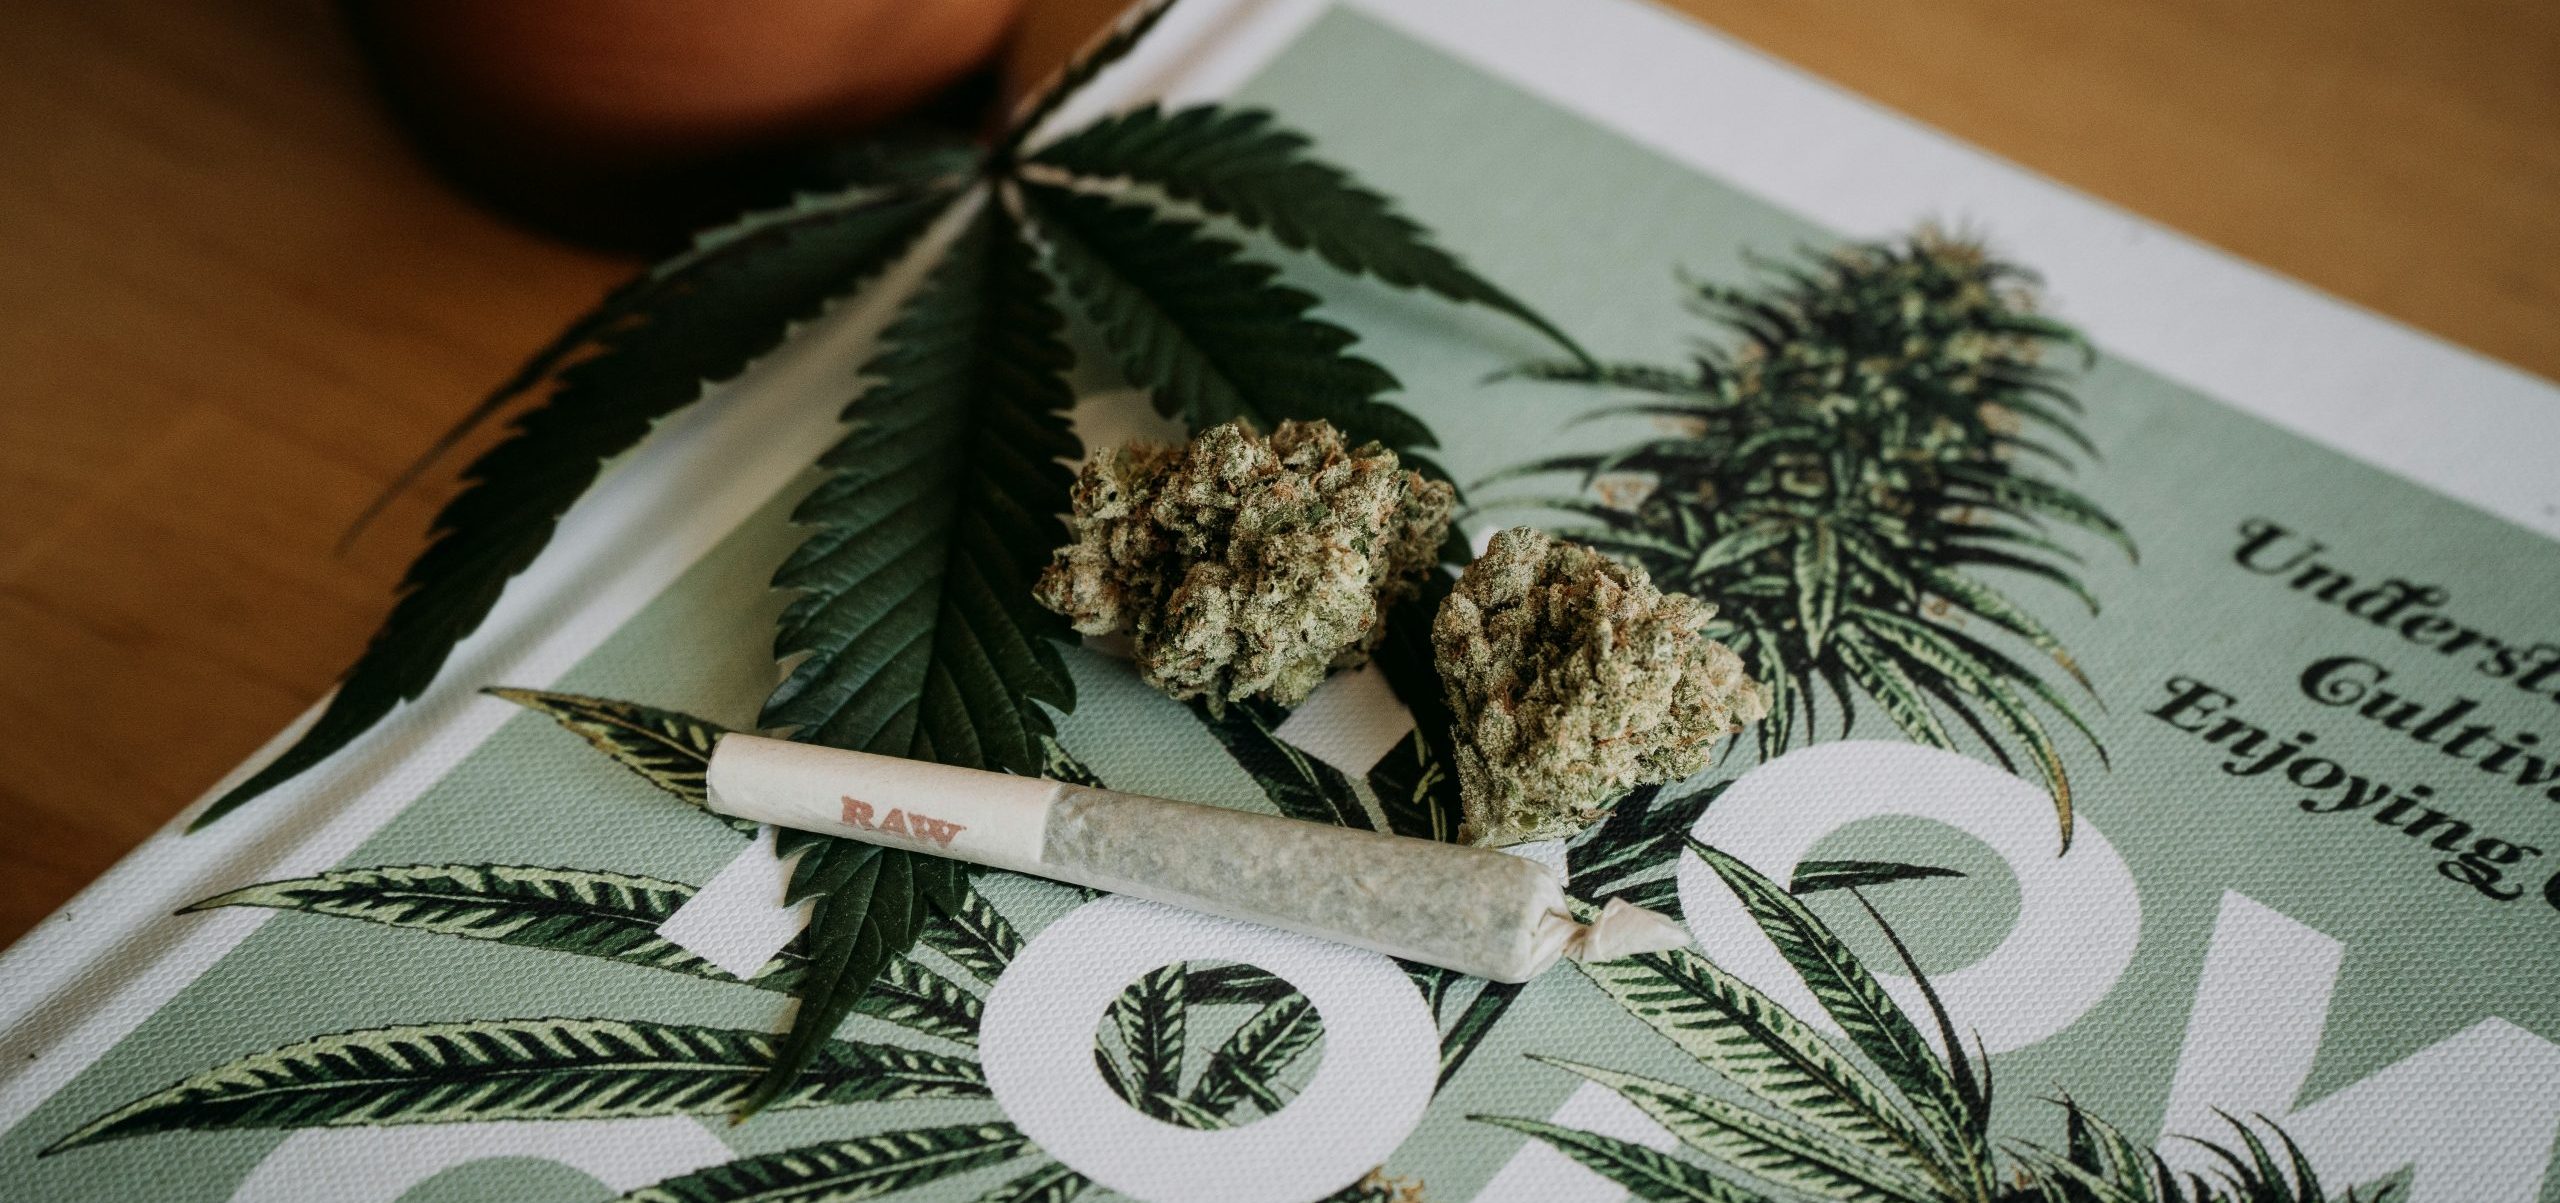 Recreational Cannabis